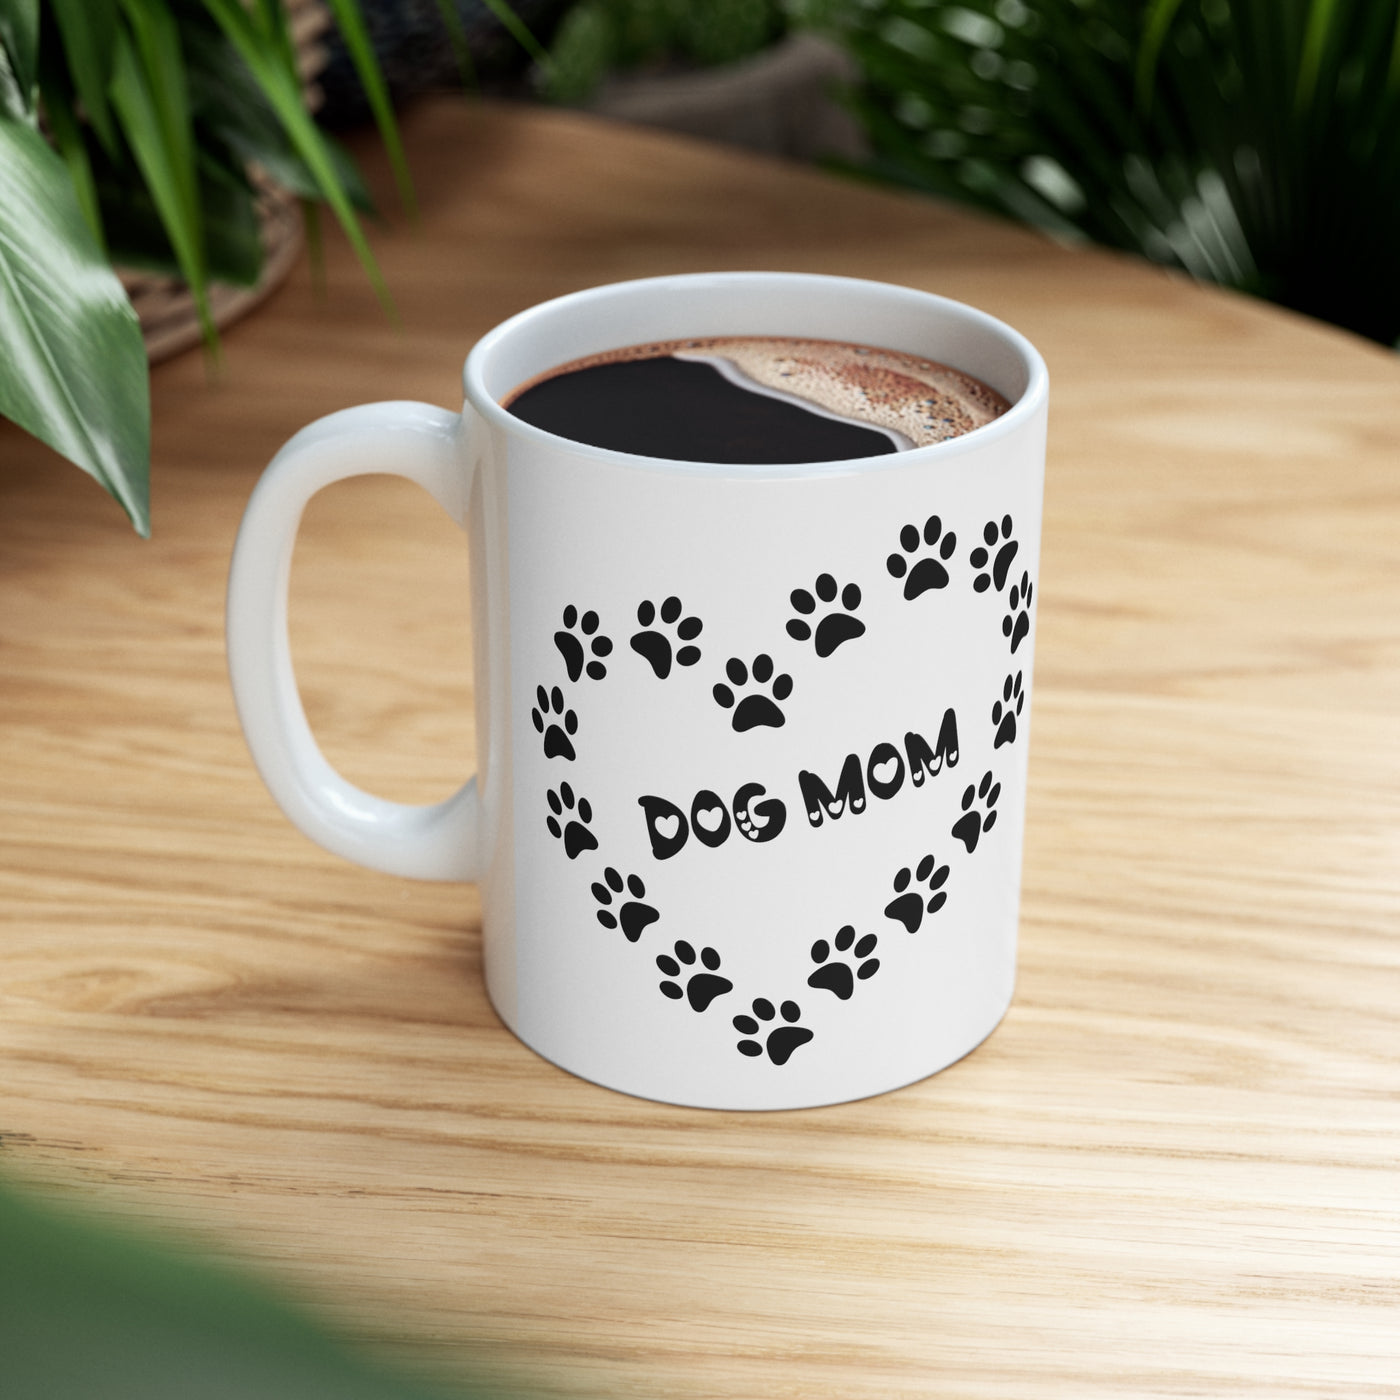 Heart Dog Mom Ceramic Mug - Rocking The Dog Mom Life